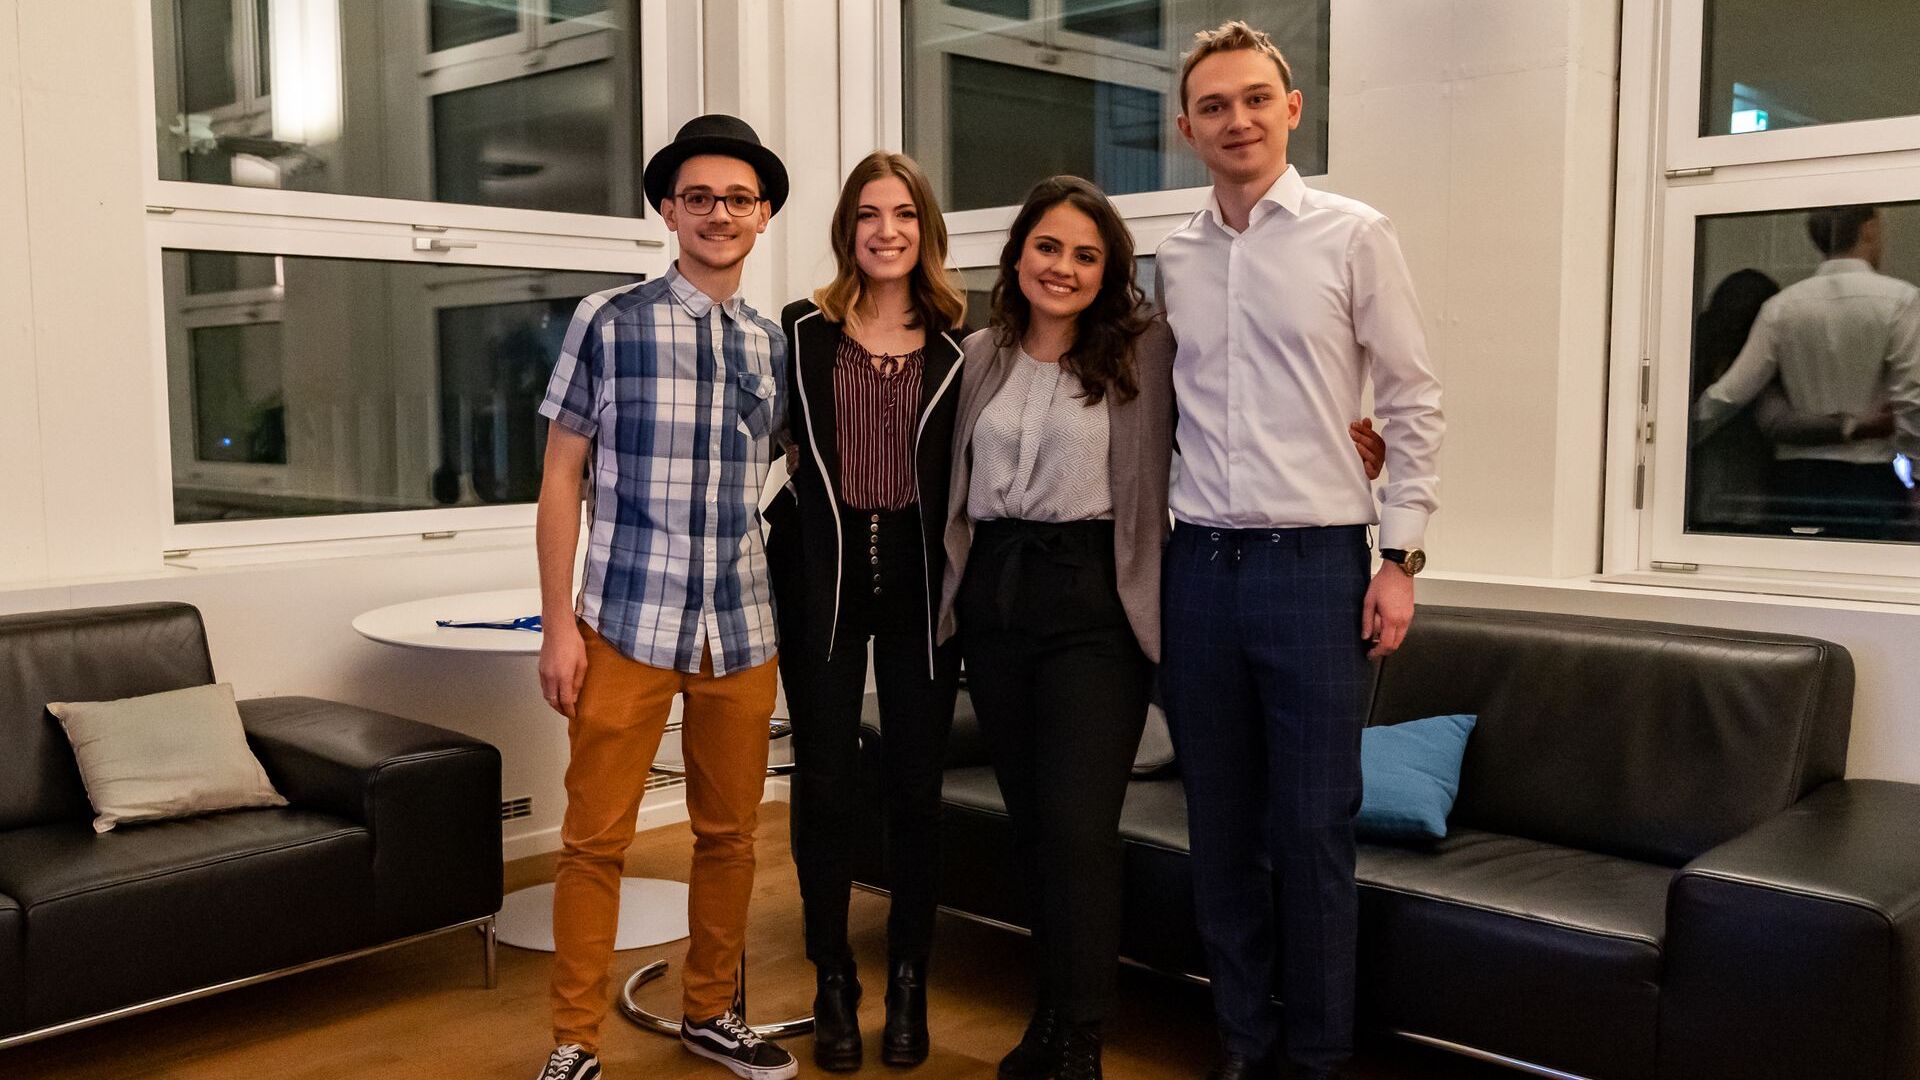 Amael Parreaux-Ey, Alessandra Capurro, Flavia Wallenhorst e Alexander Corin sono stati finalisti della graduatoria “NextGen Hero” ai “Digital Economy Award” 2021